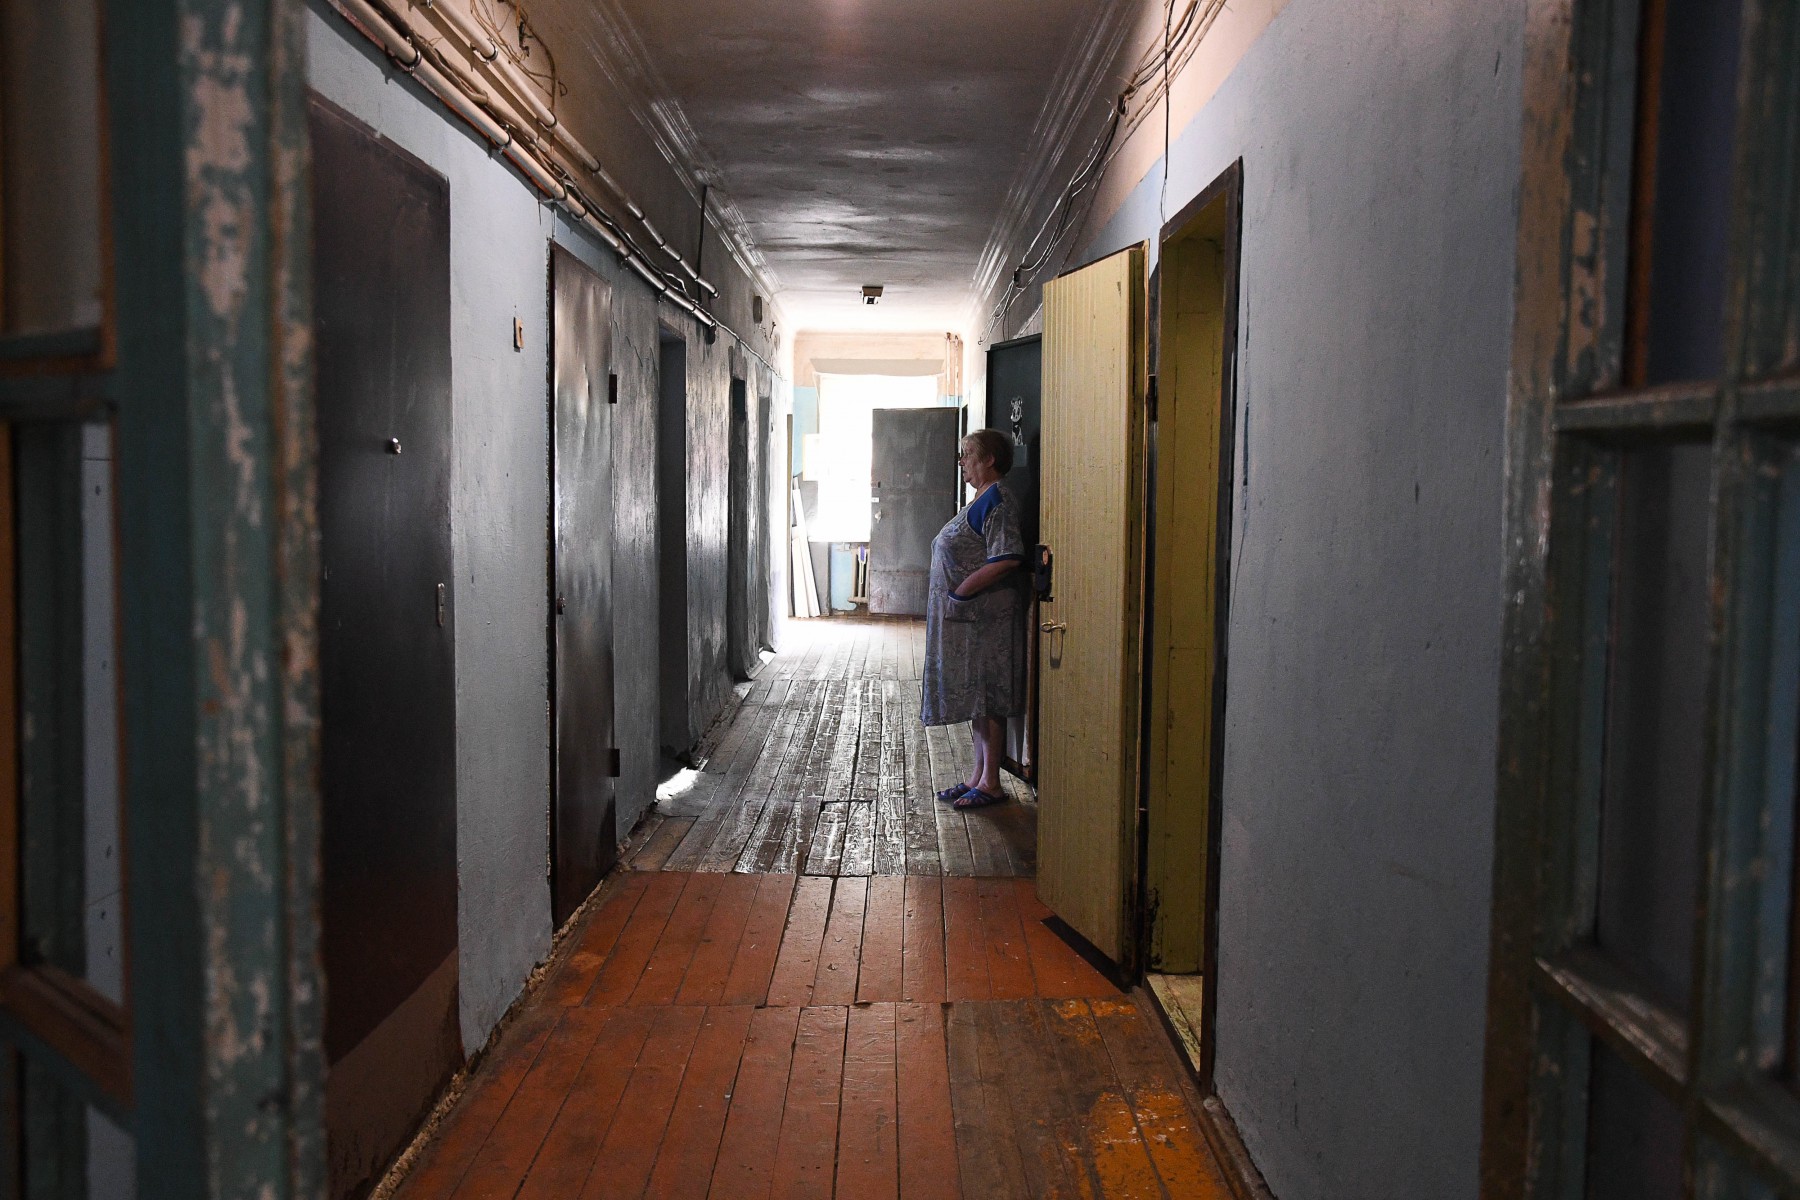 В коридоре бывшего общежития на ул. Цветников, 13 жители покрасили стены в приятный синий цвет. Сегодня здесь уже не так мрачно, как в прошлом году. Фото Владимира Коцюбы-Белых